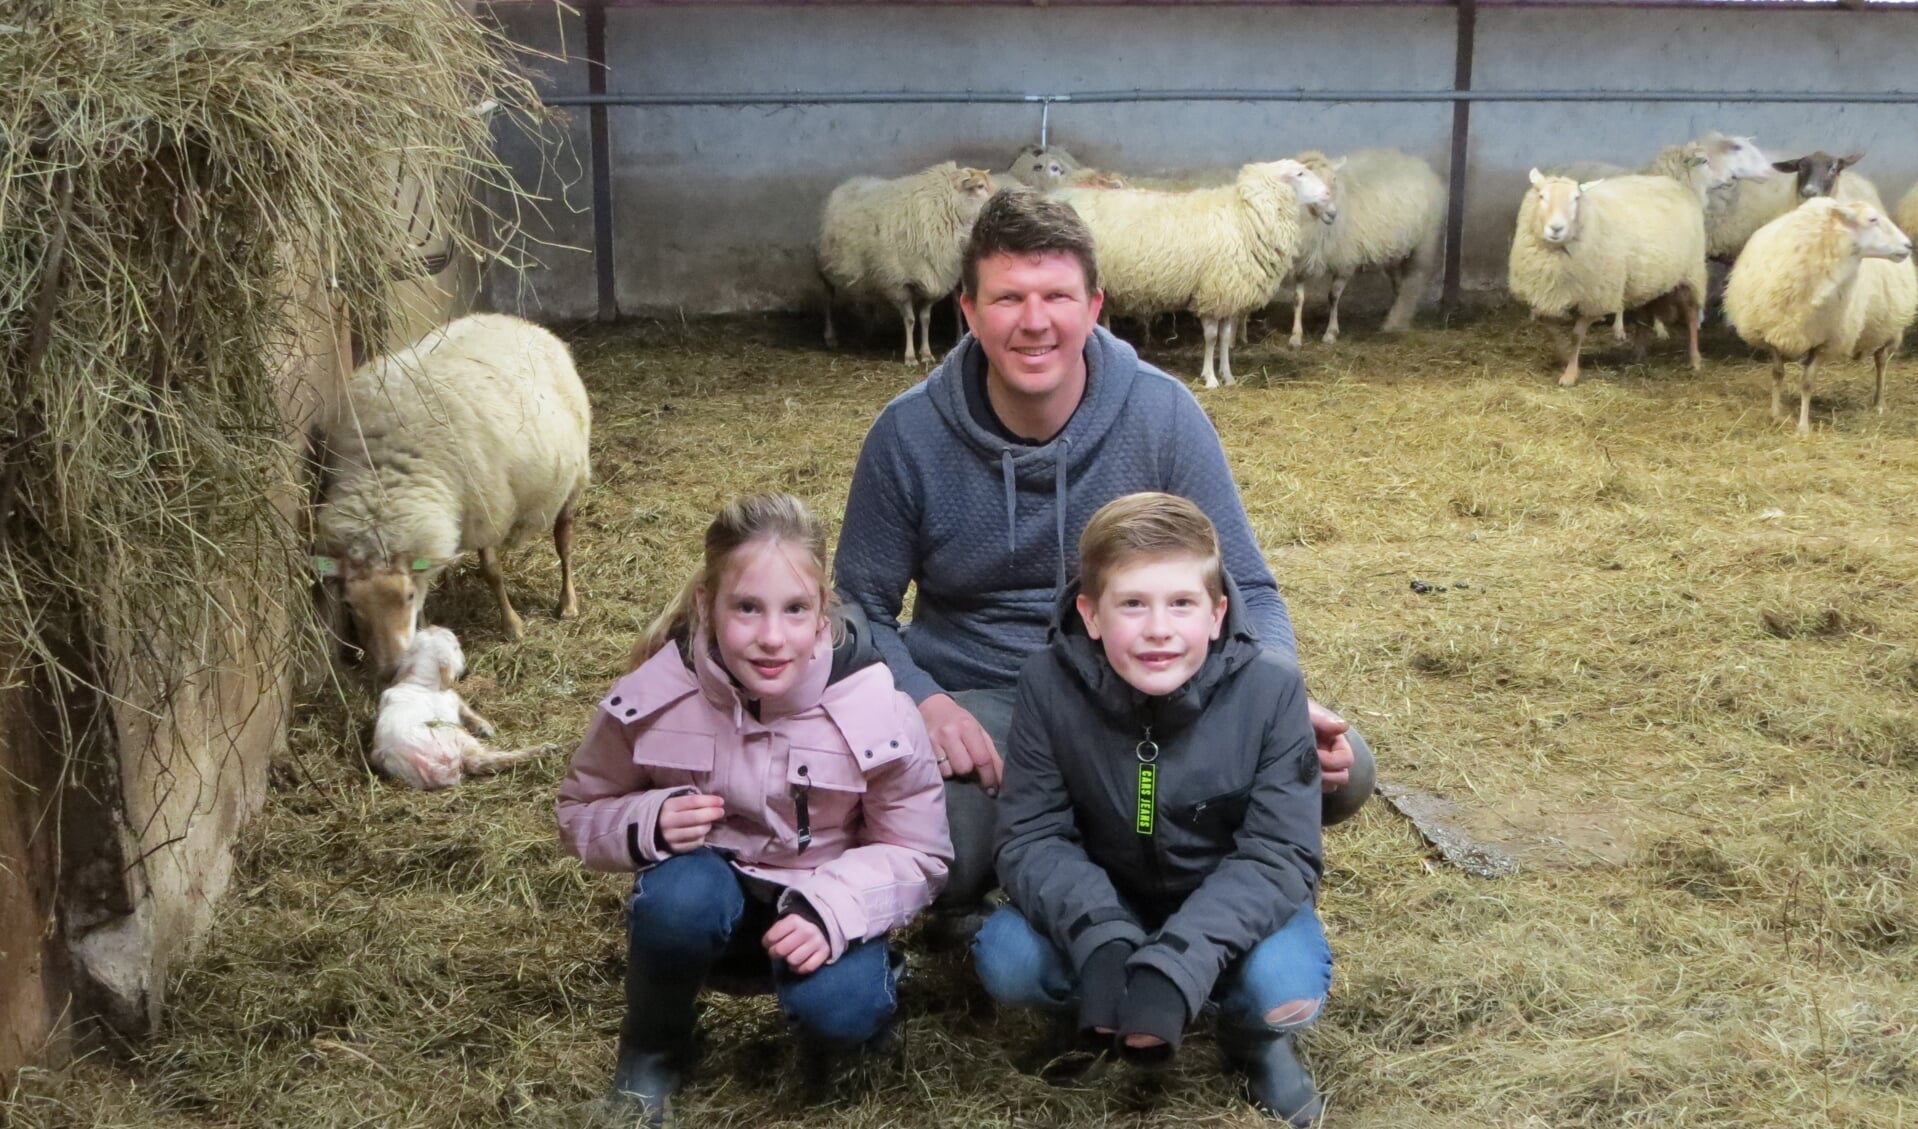 Lotte en Gijs de Jager met schaapherder Siebe zitten na het interview dichtbij moeder schaap en haar zojuist geboren lammetje. Foto: Josée Gruwel.